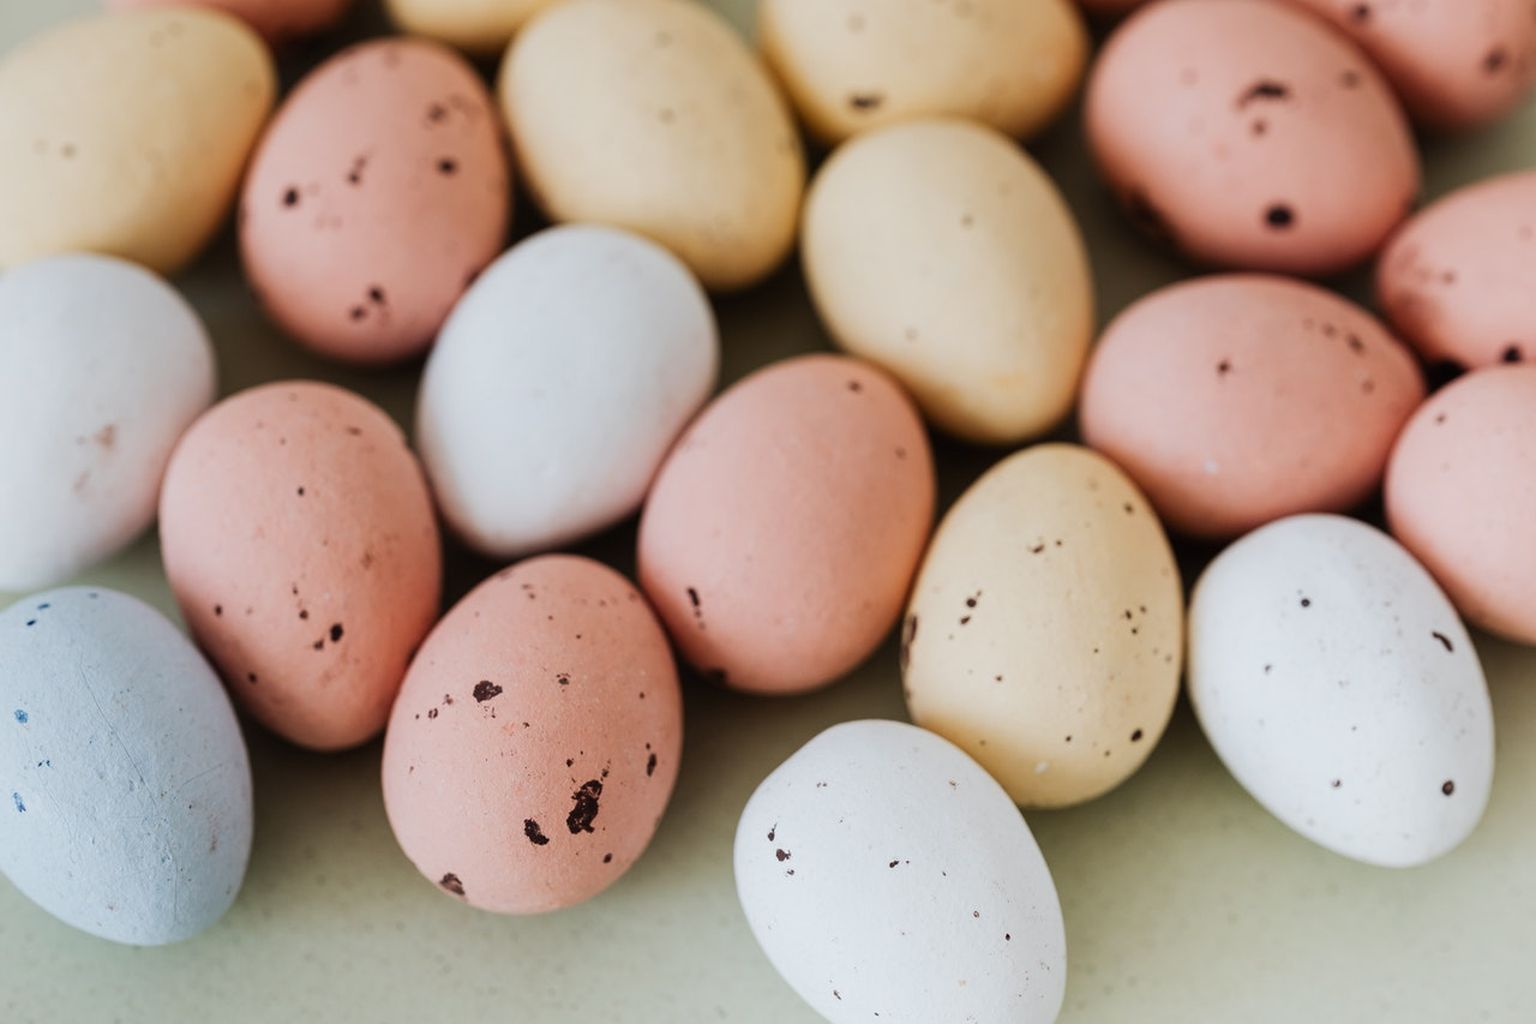 Millist nippi sina keedetud muna koorimiseks kasutad?